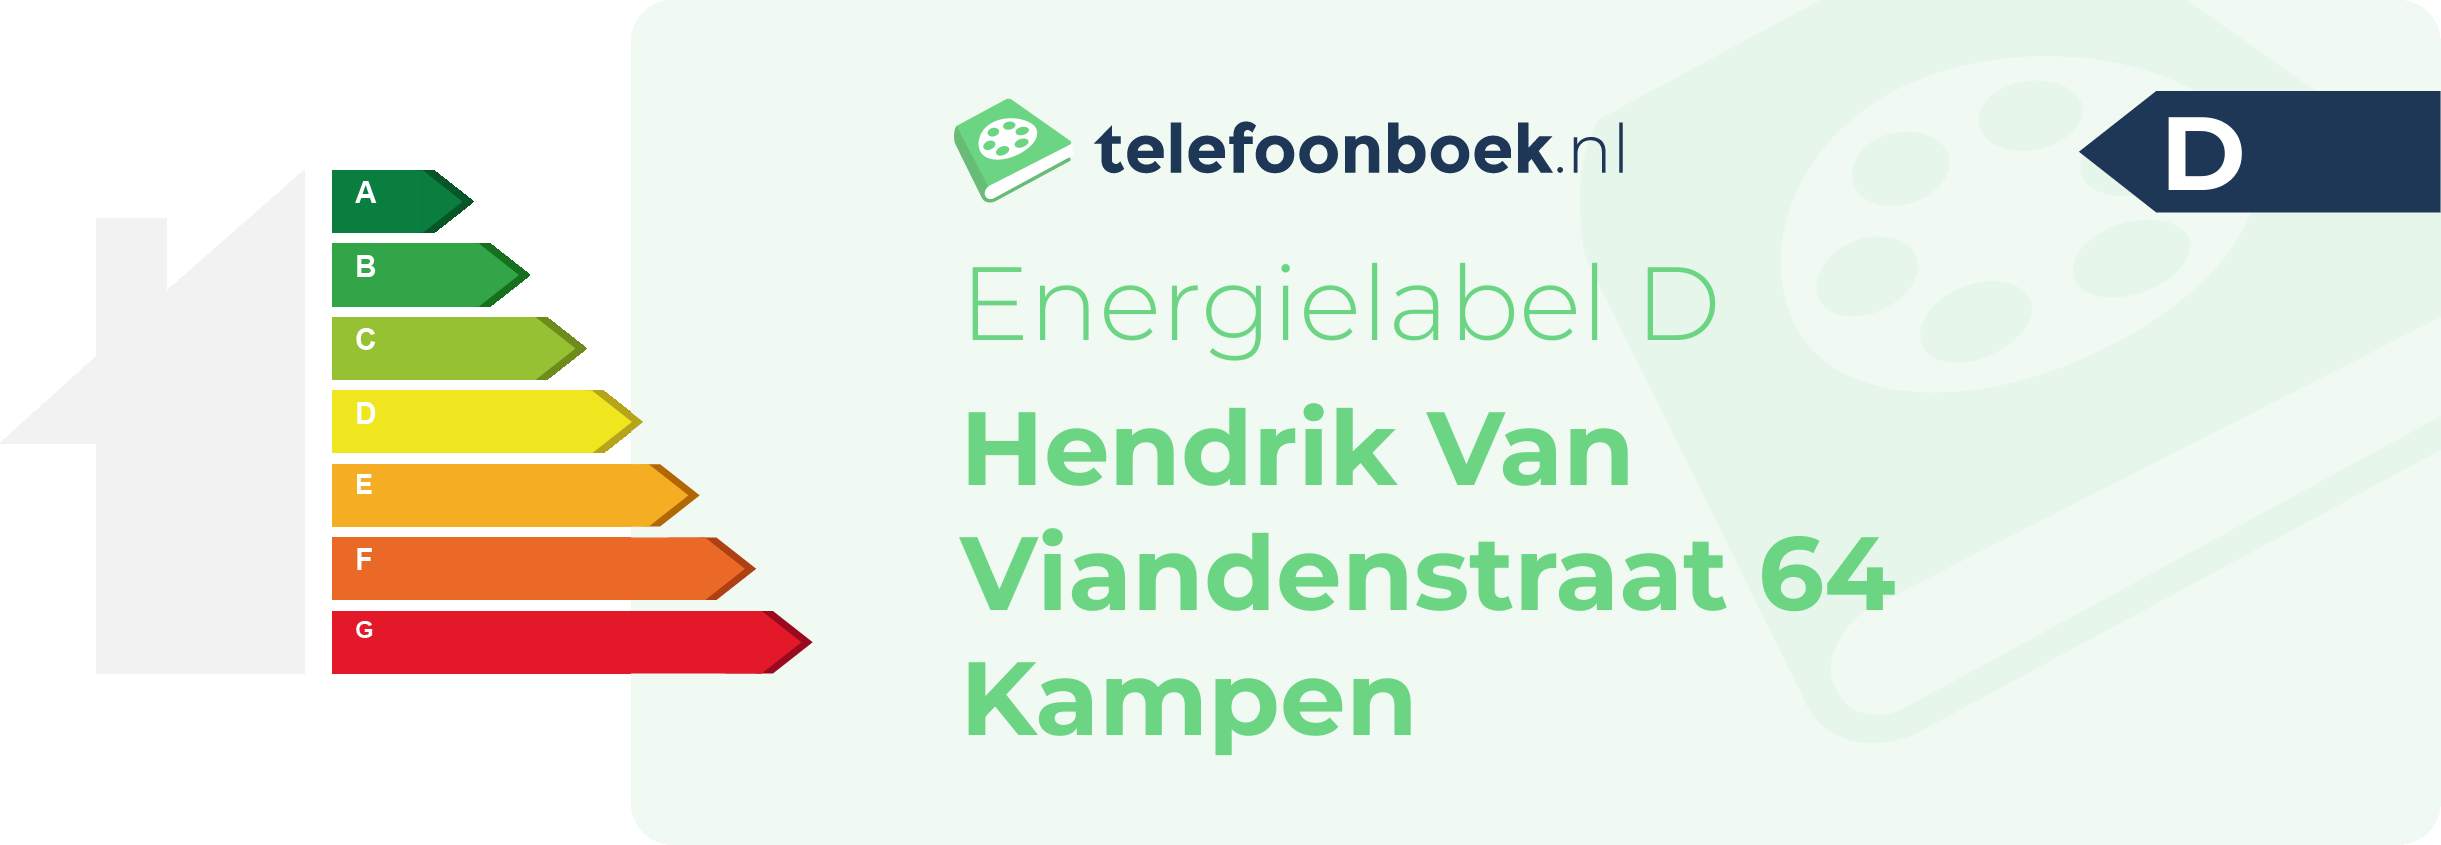 Energielabel Hendrik Van Viandenstraat 64 Kampen